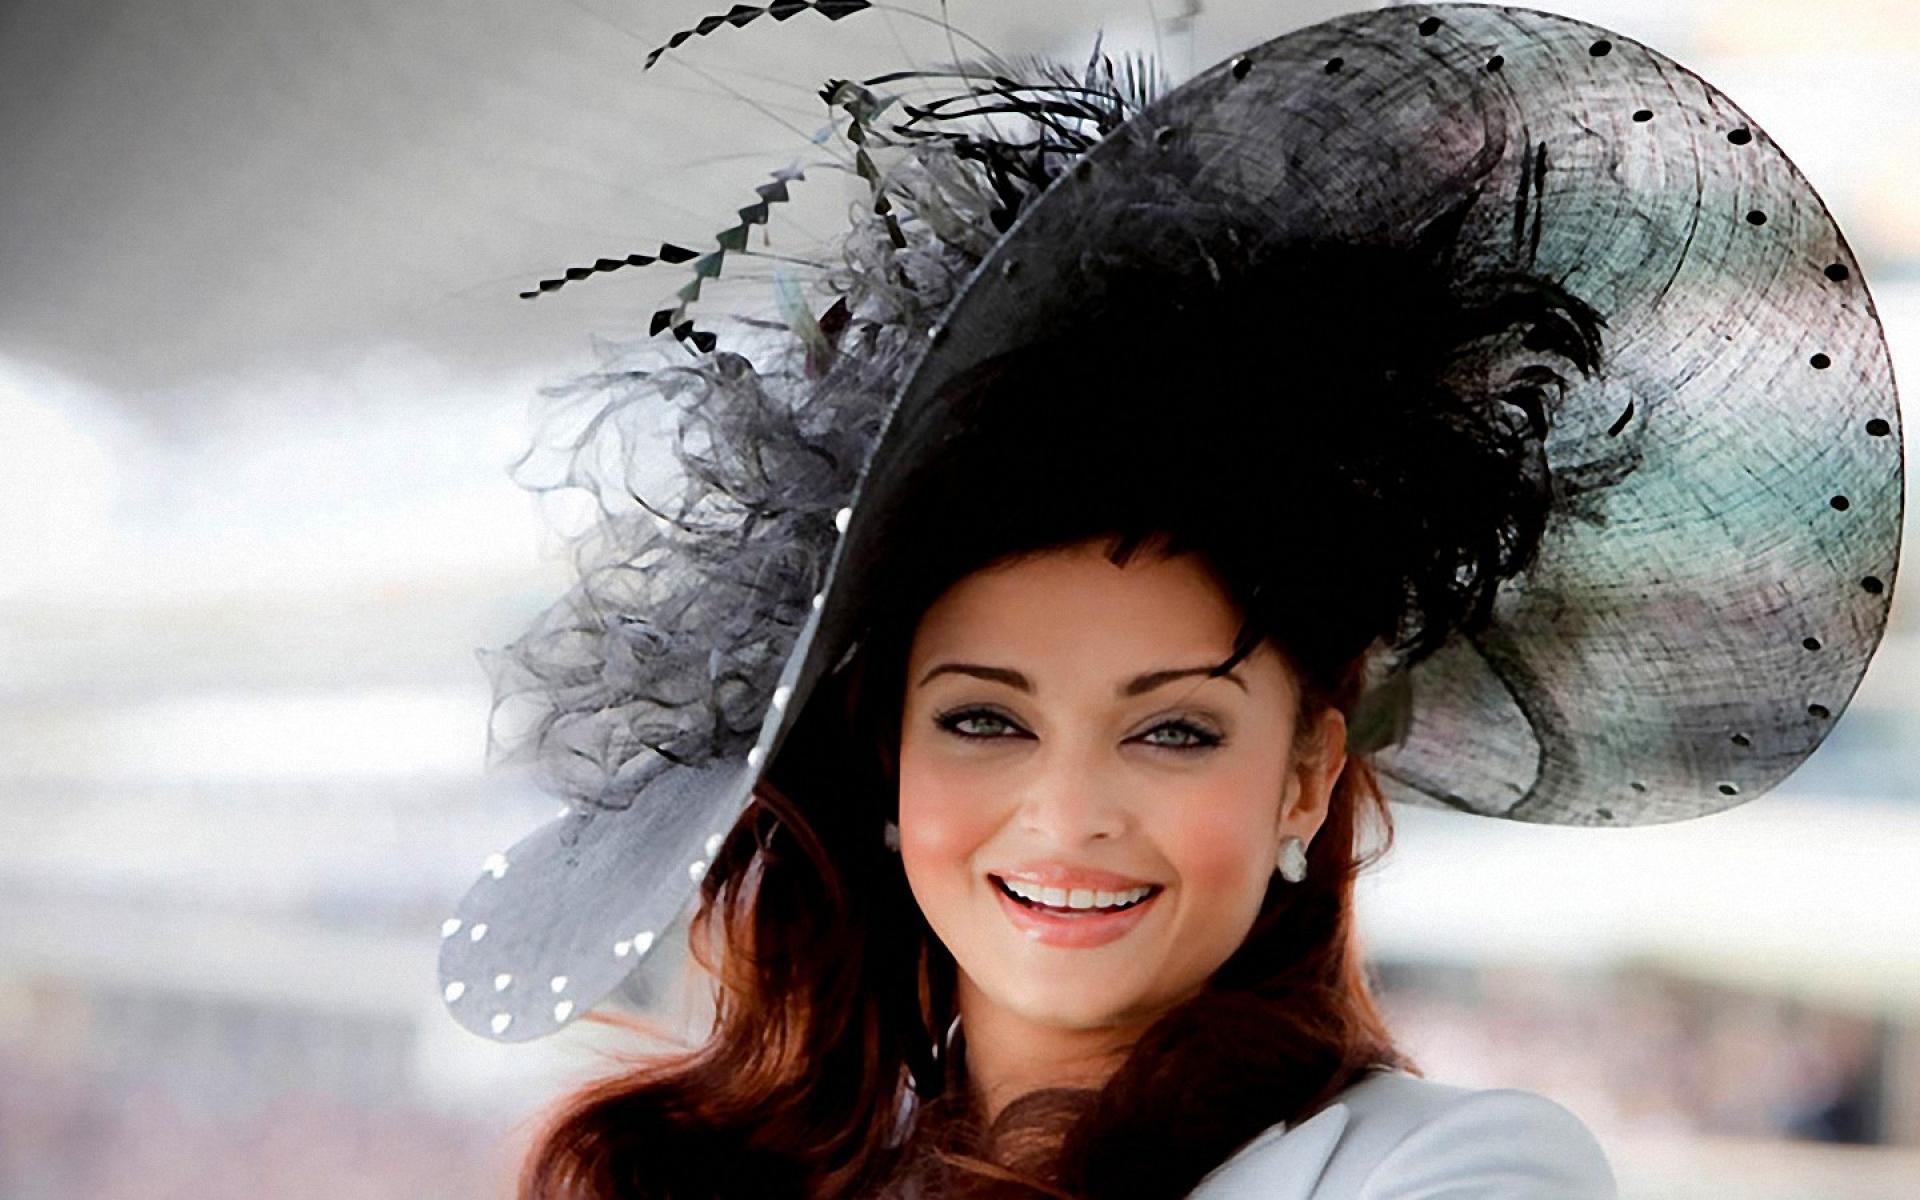 Indian-Actress-Aishwarya-Rai-Photoshoot-2015-Aishwarya-Rai-Biography-celebritiesphotoshoot.com-14